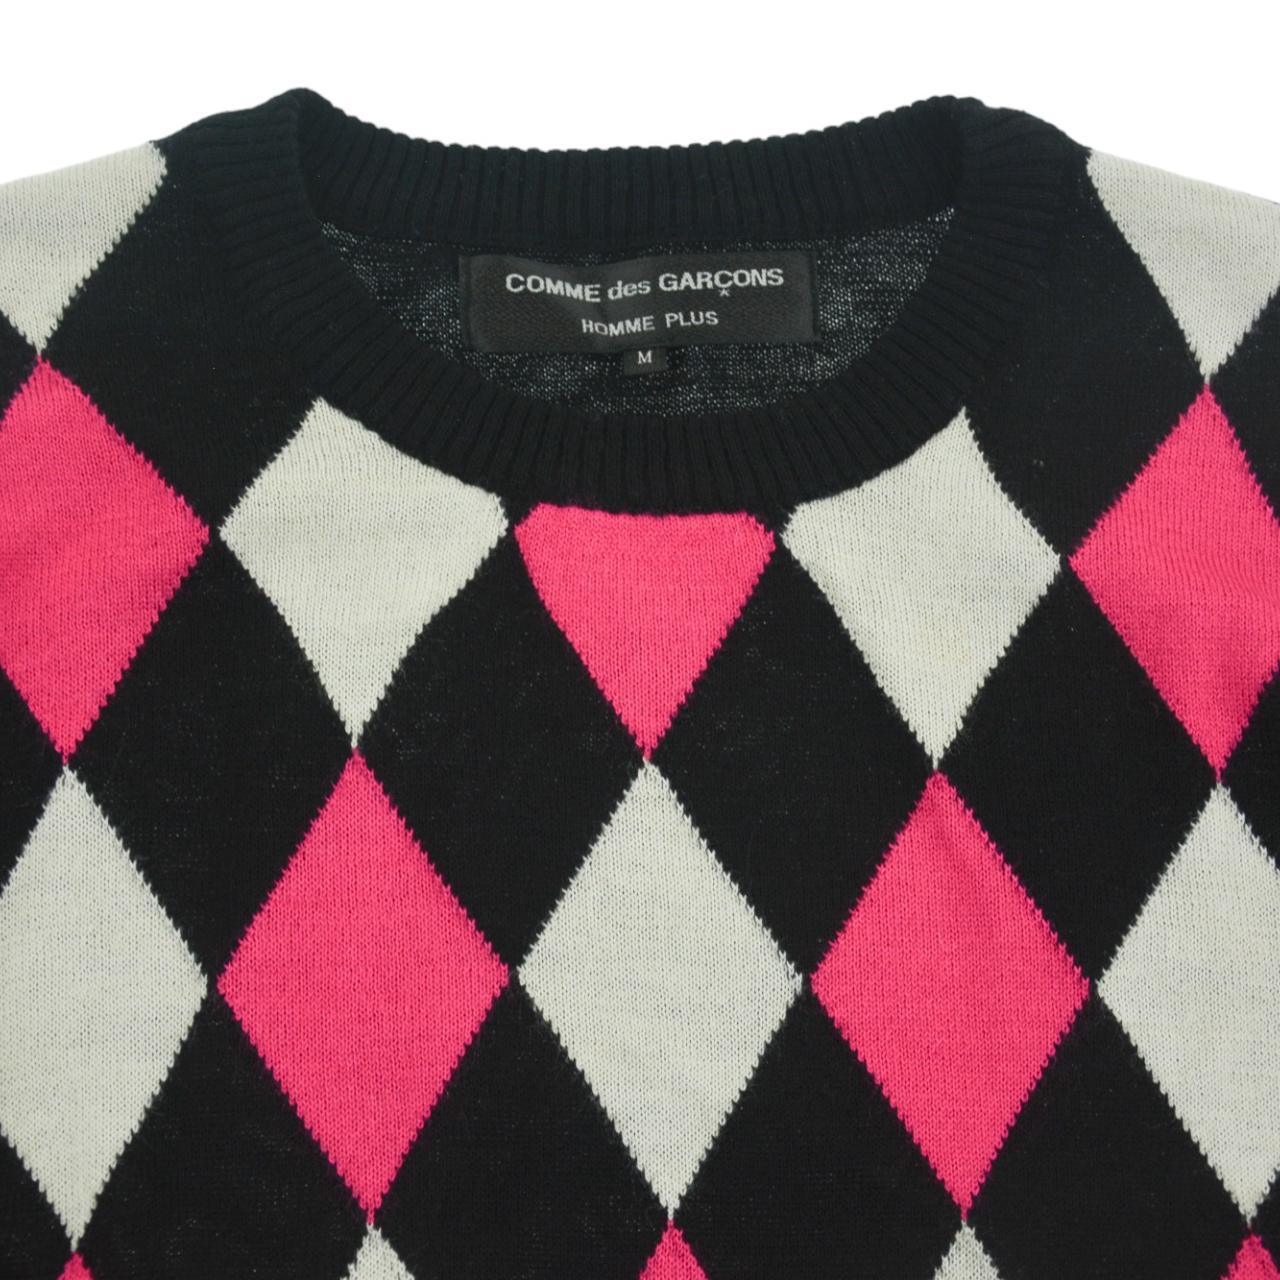 Vintage Comme des Garcons Homme Plus Knit Jumper Size S - Known Source